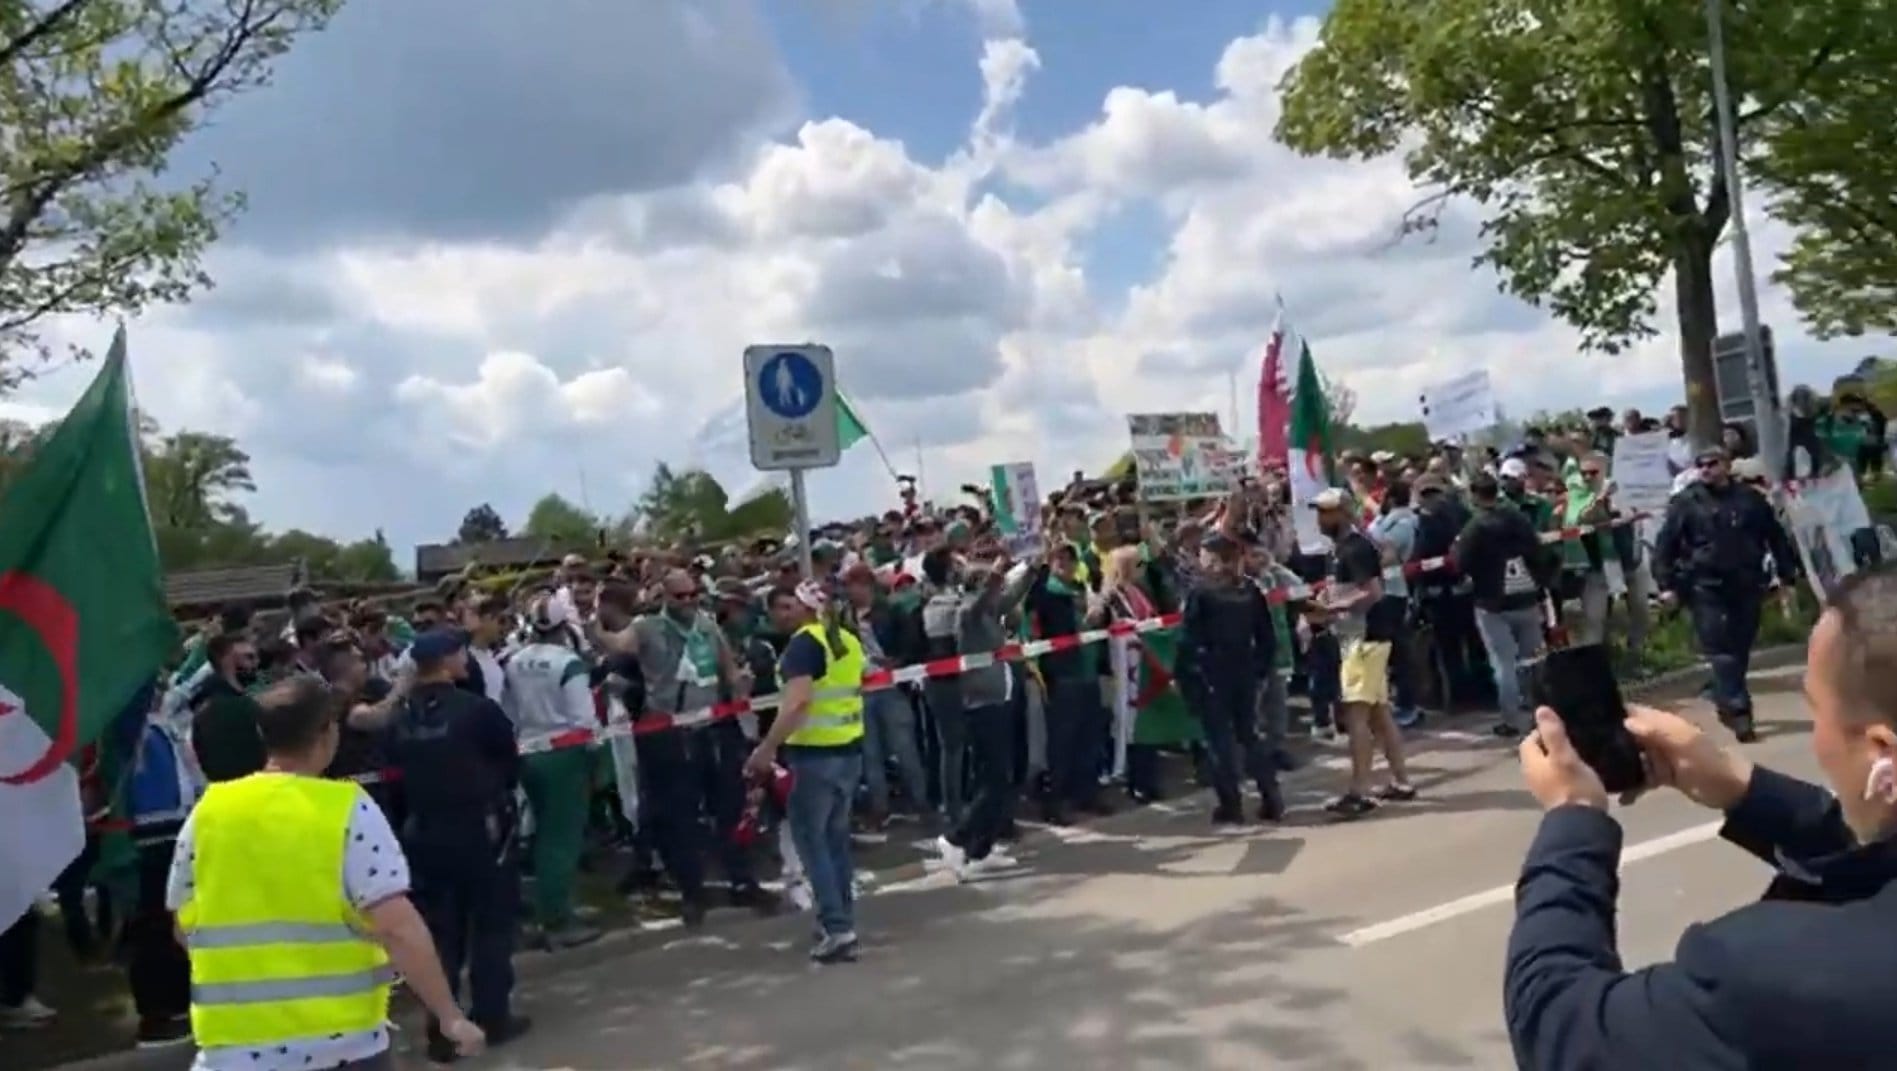 Affaire Gassama: des supporters algériens au siège de la FIFA pour manifester une nouvelle fois !